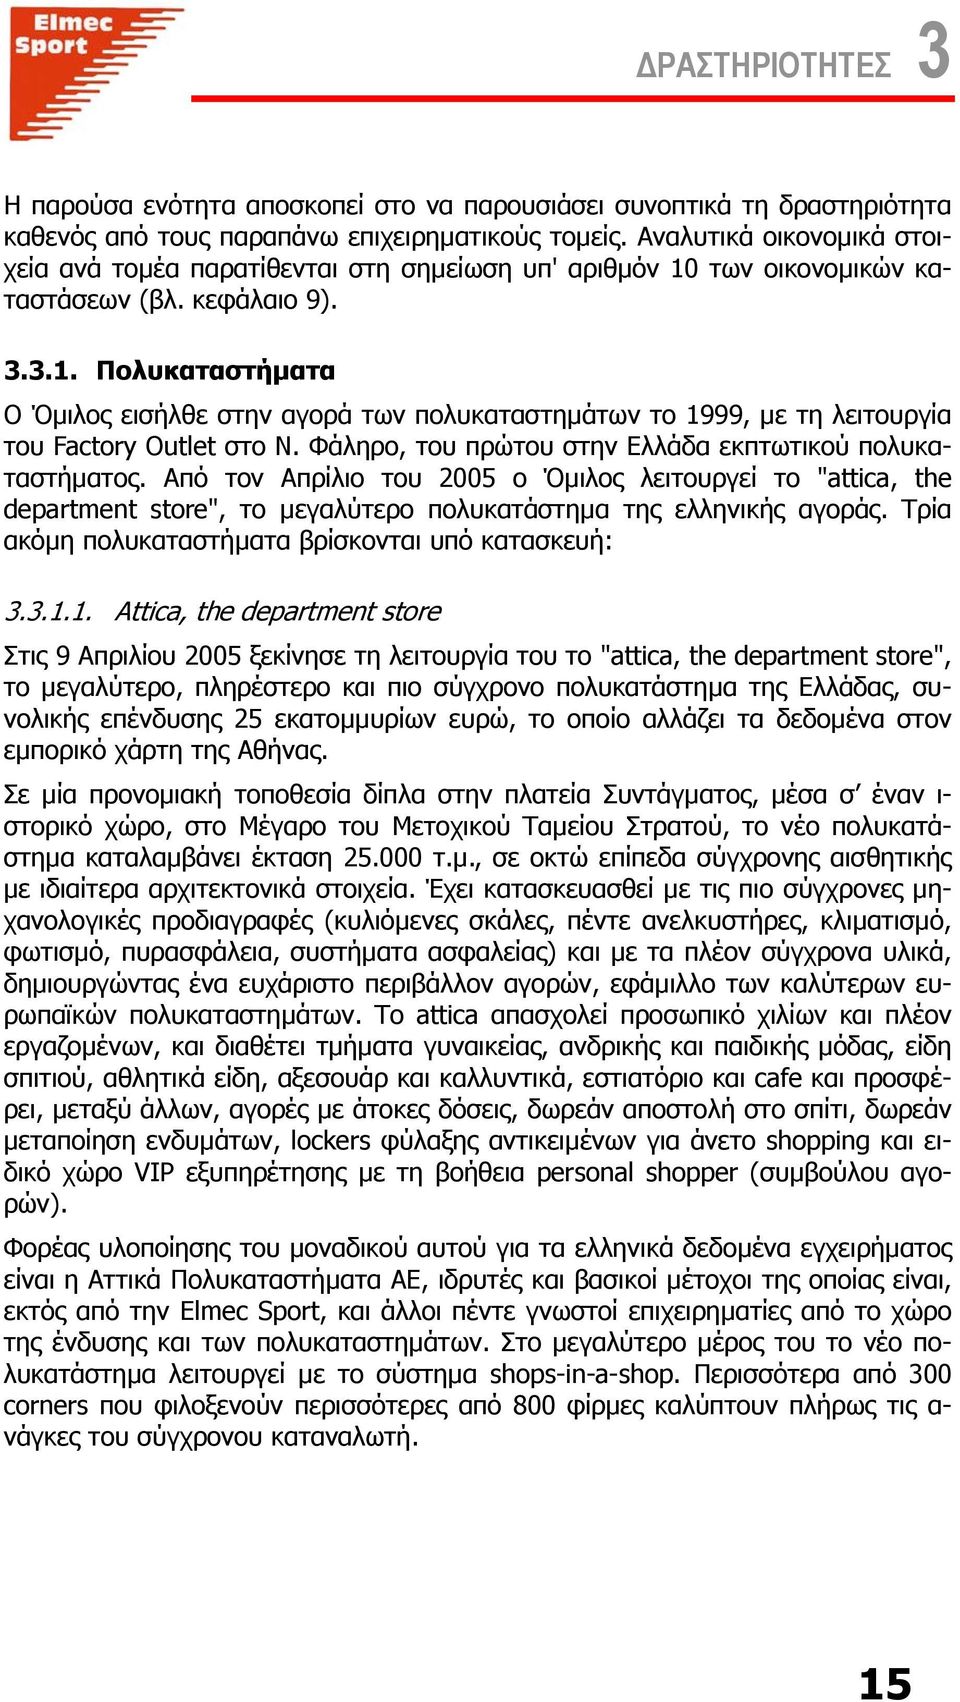 Φάληρο, του πρώτου στην Ελλάδα εκπτωτικού πολυκαταστήµατος. Από τον Απρίλιο του 2005 ο Όµιλος λειτουργεί το "attica, the department store", το µεγαλύτερο πολυκατάστηµα της ελληνικής αγοράς.